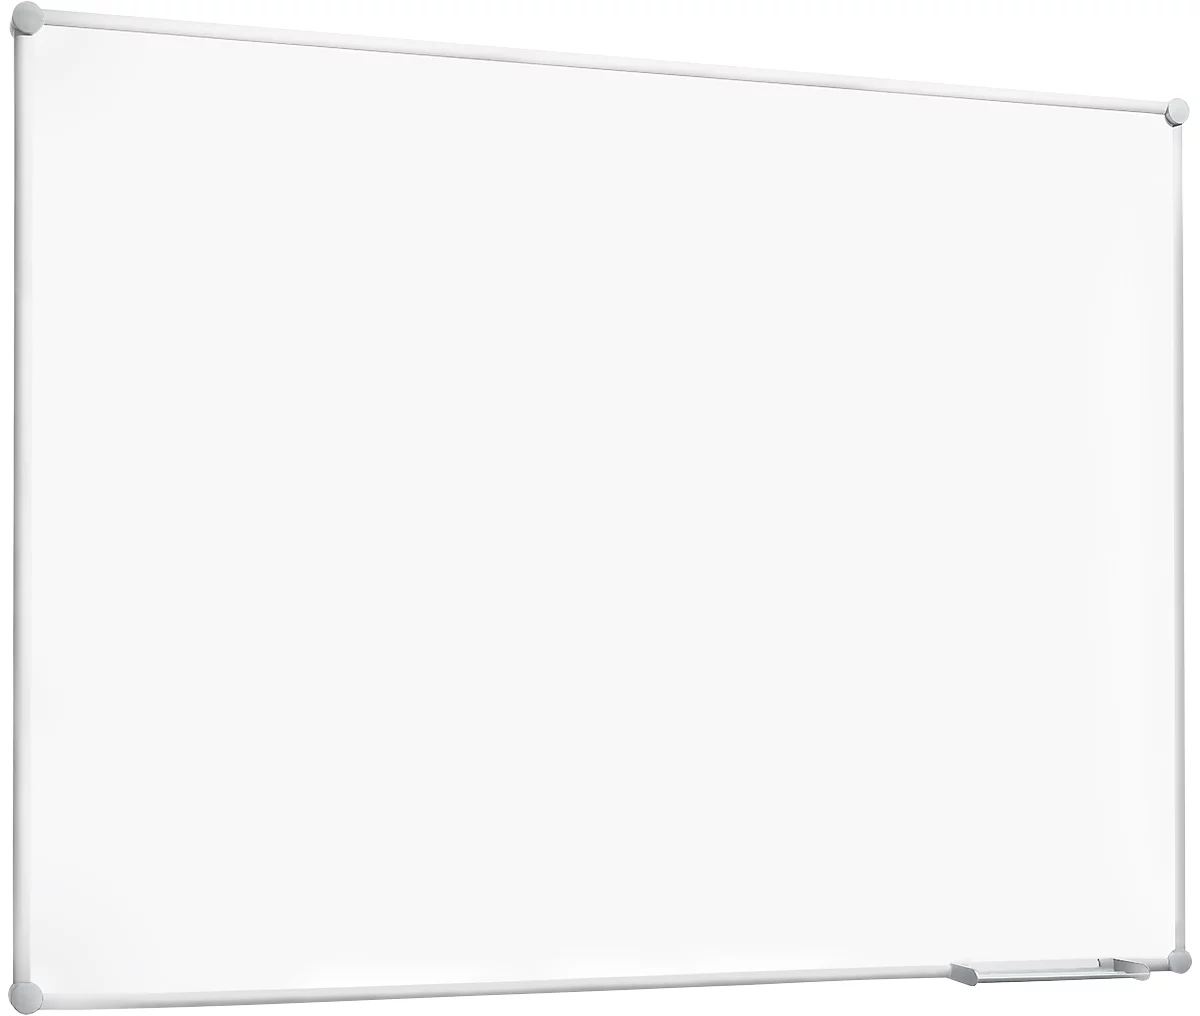 Pizarra blanca 2000 MAULpro, plastificada en blanco, marco de aluminio plateado, 1500 x 1000 mm